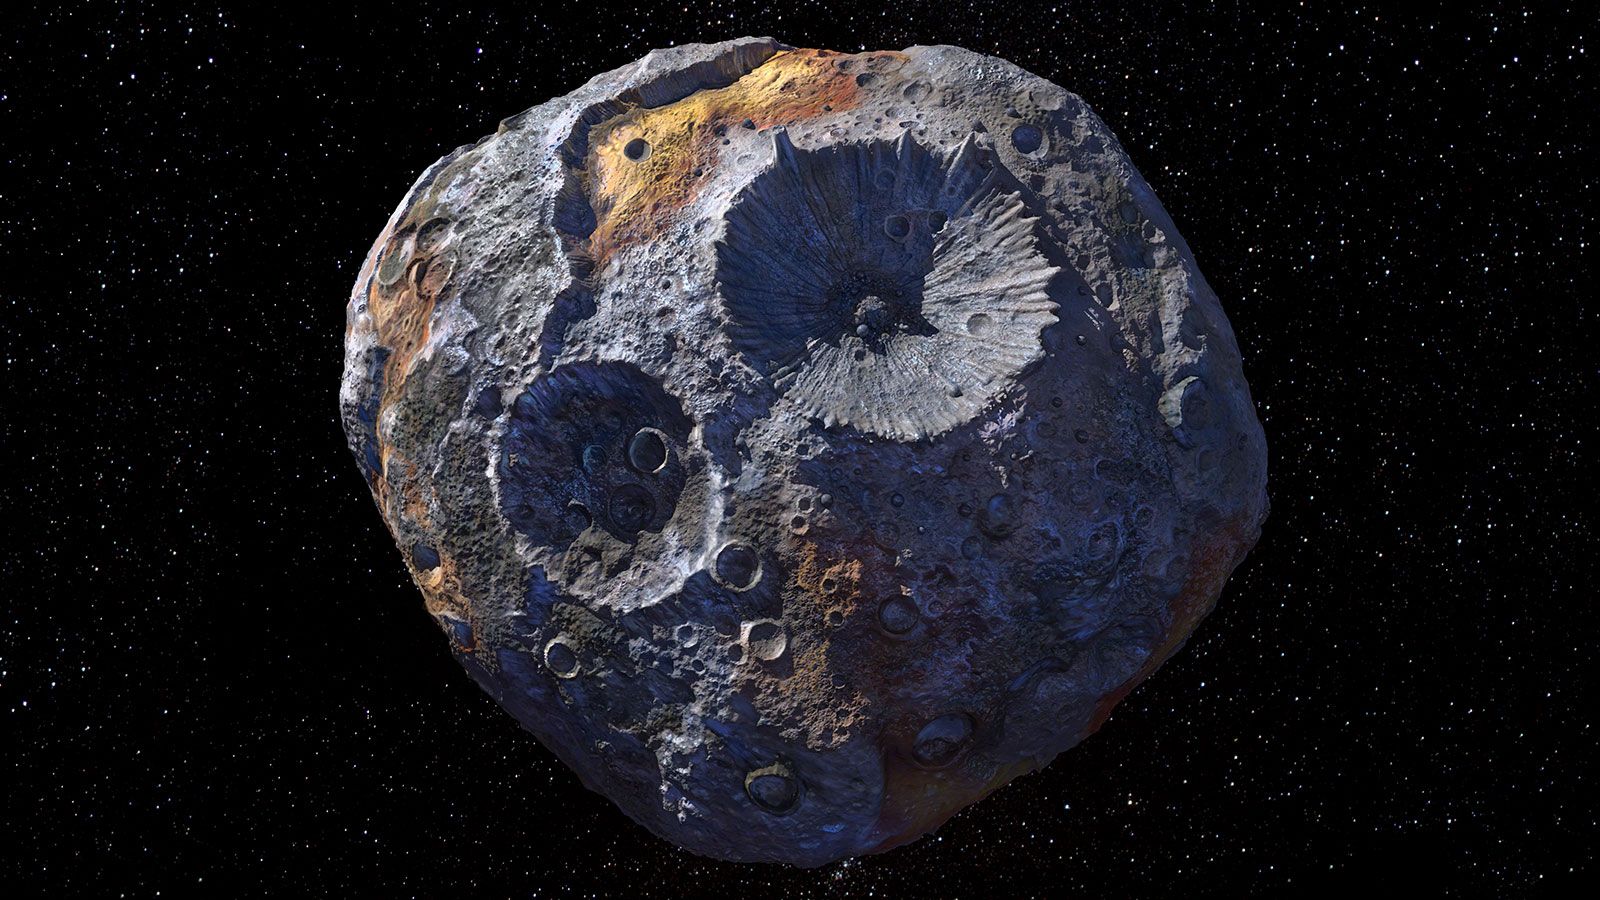 Проєкт "Психея" з вивчення космічно дорогого астероїда скоро перейде до фінального етапу